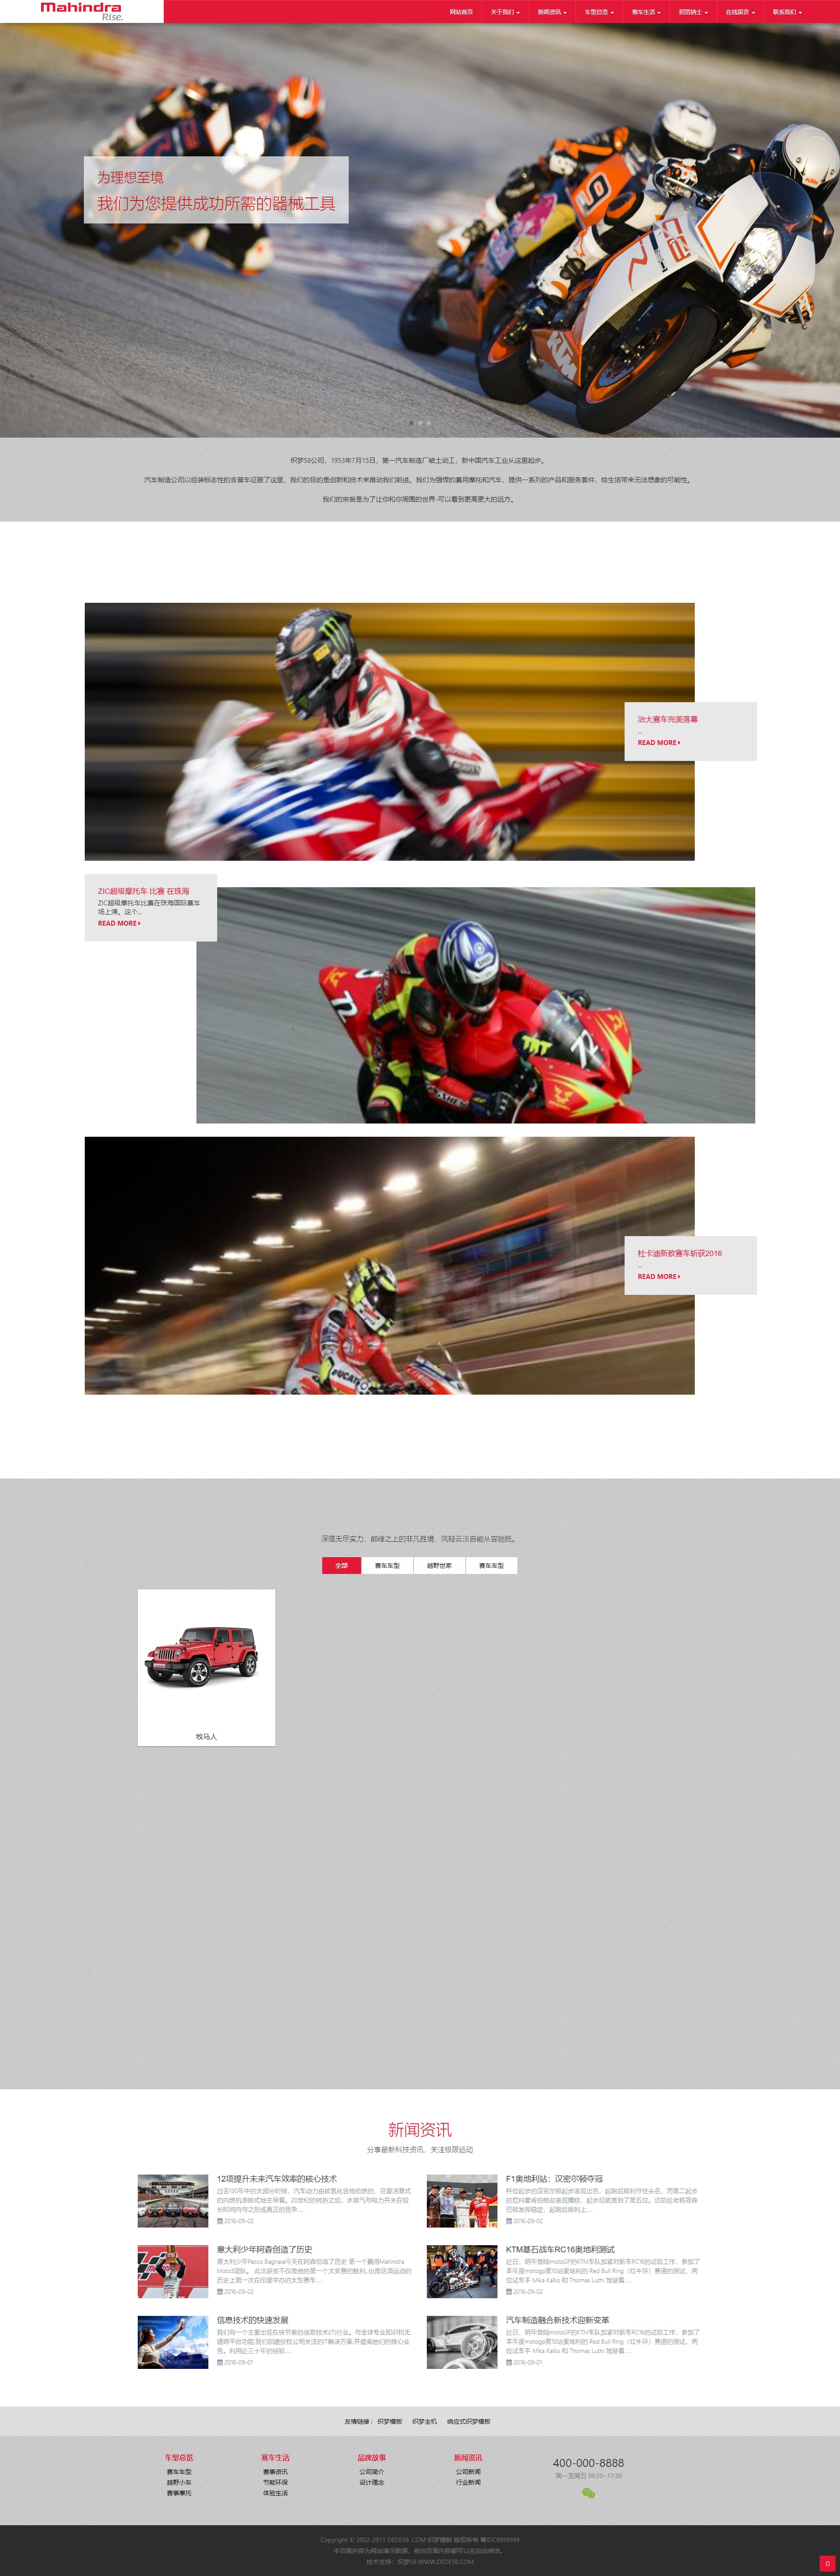 A427 HTML5鲜红色响应式网站汽车工业摩托企业网站模版dede模版网站源码响应式移动端